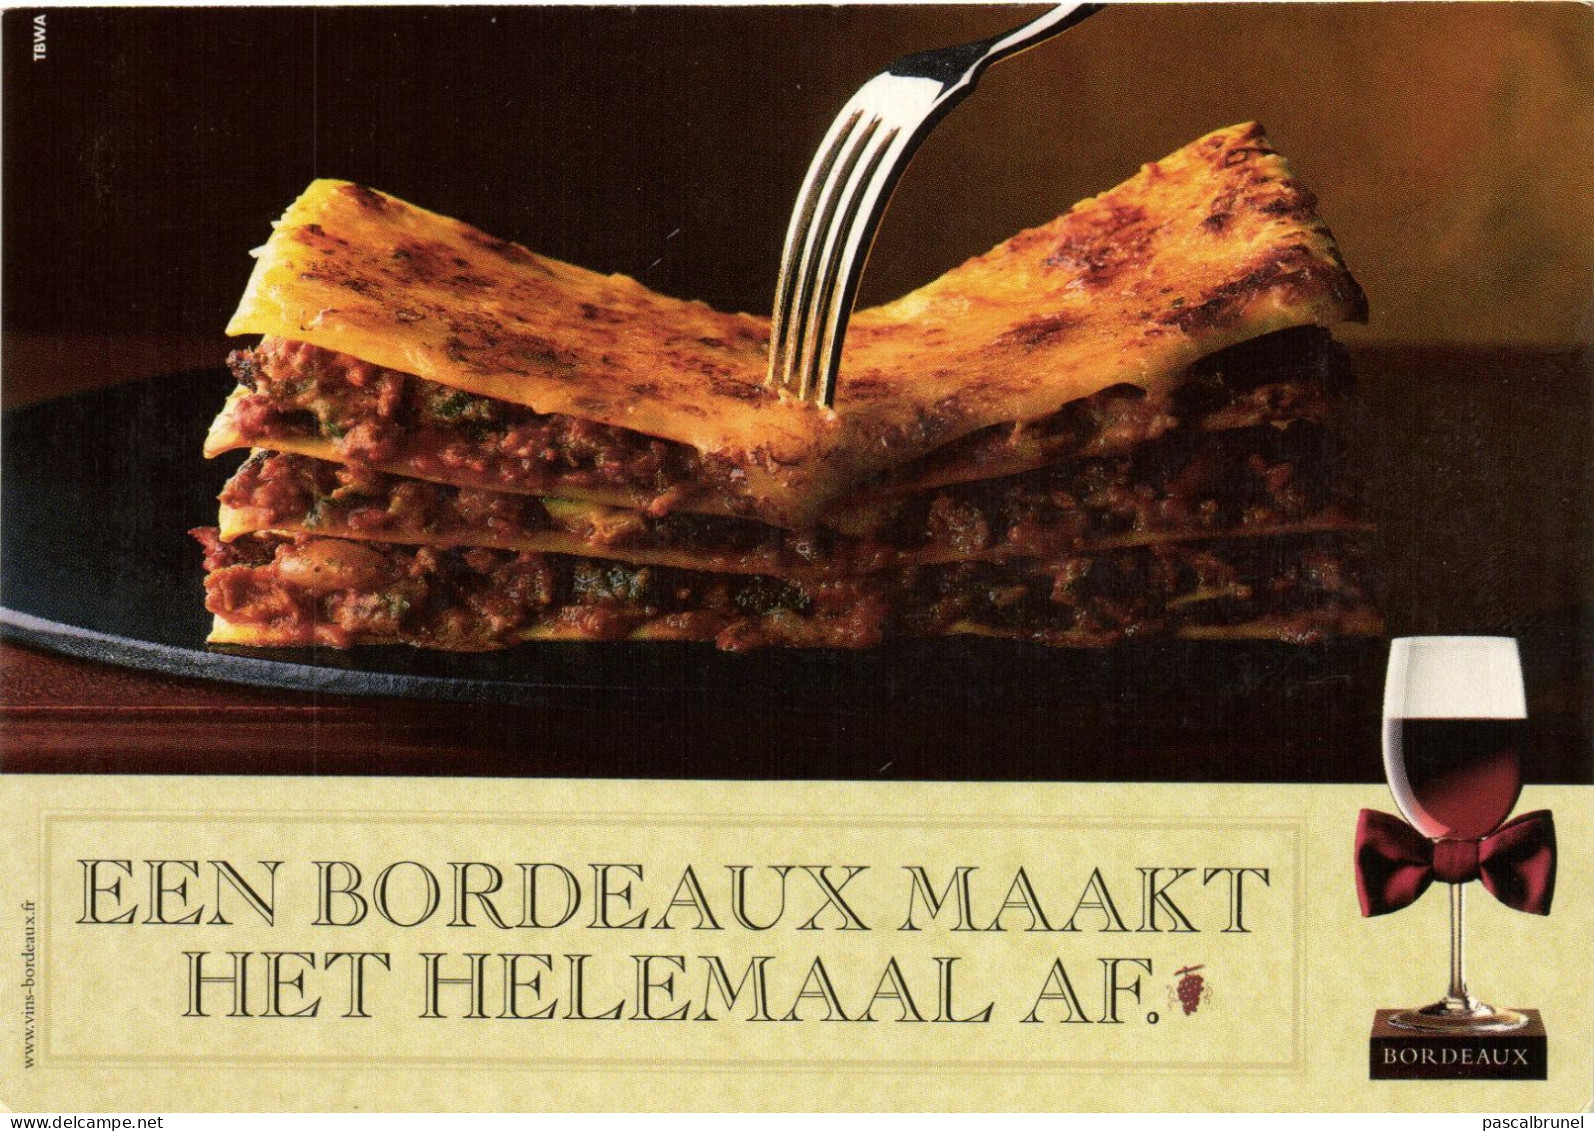 BORDEAUX - EEN BORDEAUX MAAKT HET HELEMAAL AF. - Advertising